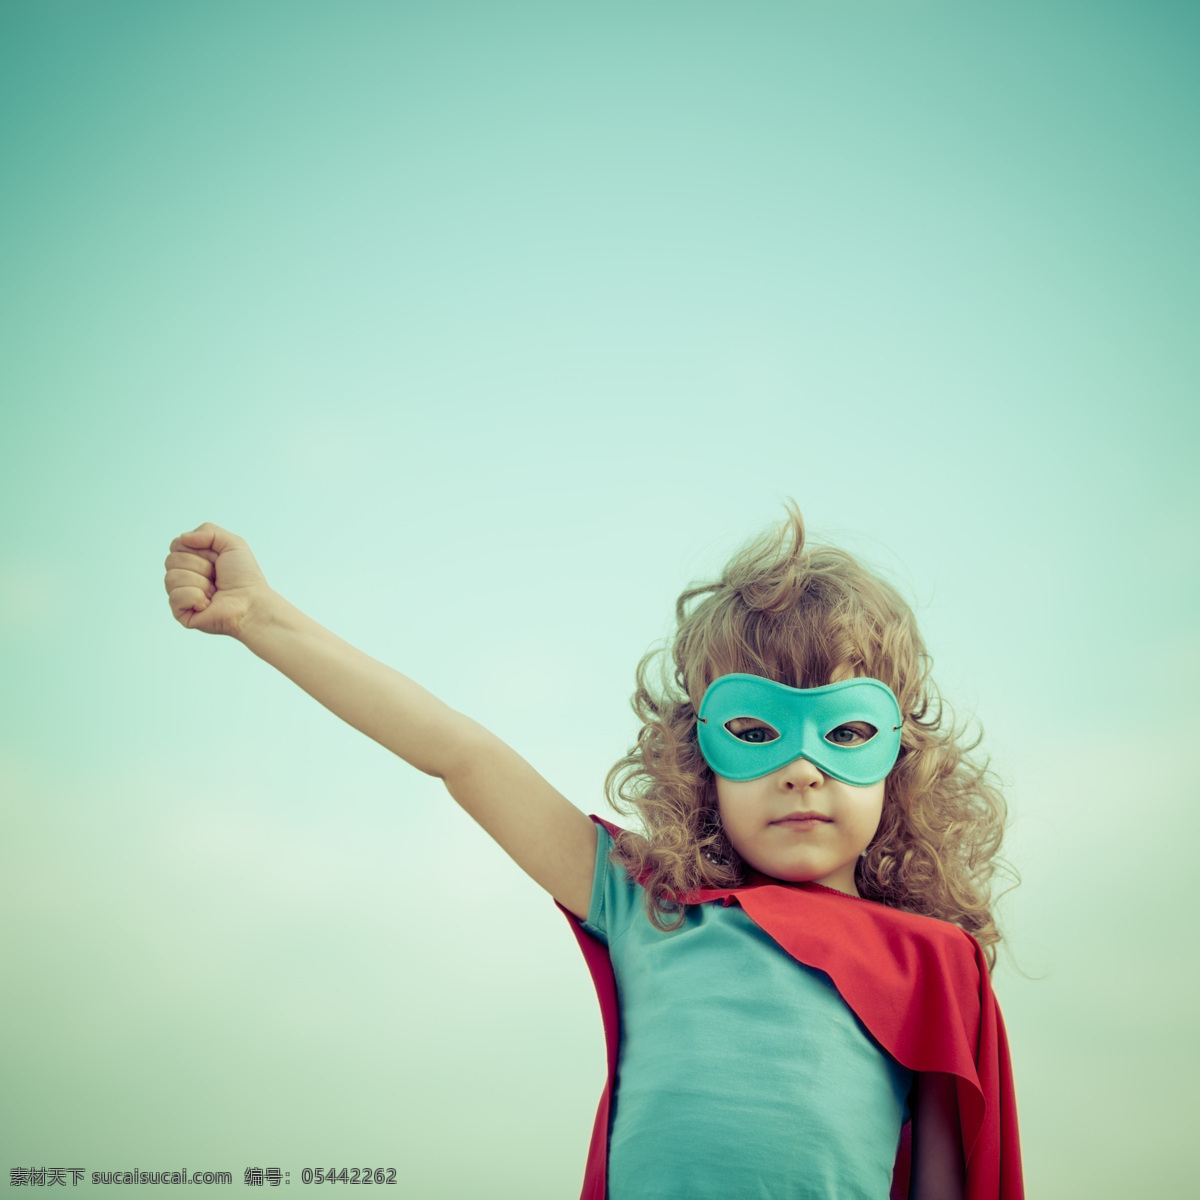 外国 小 英雄 戴面具的超人 小英雄 超级英雄 儿童超人 披风 儿童图片 人物图片